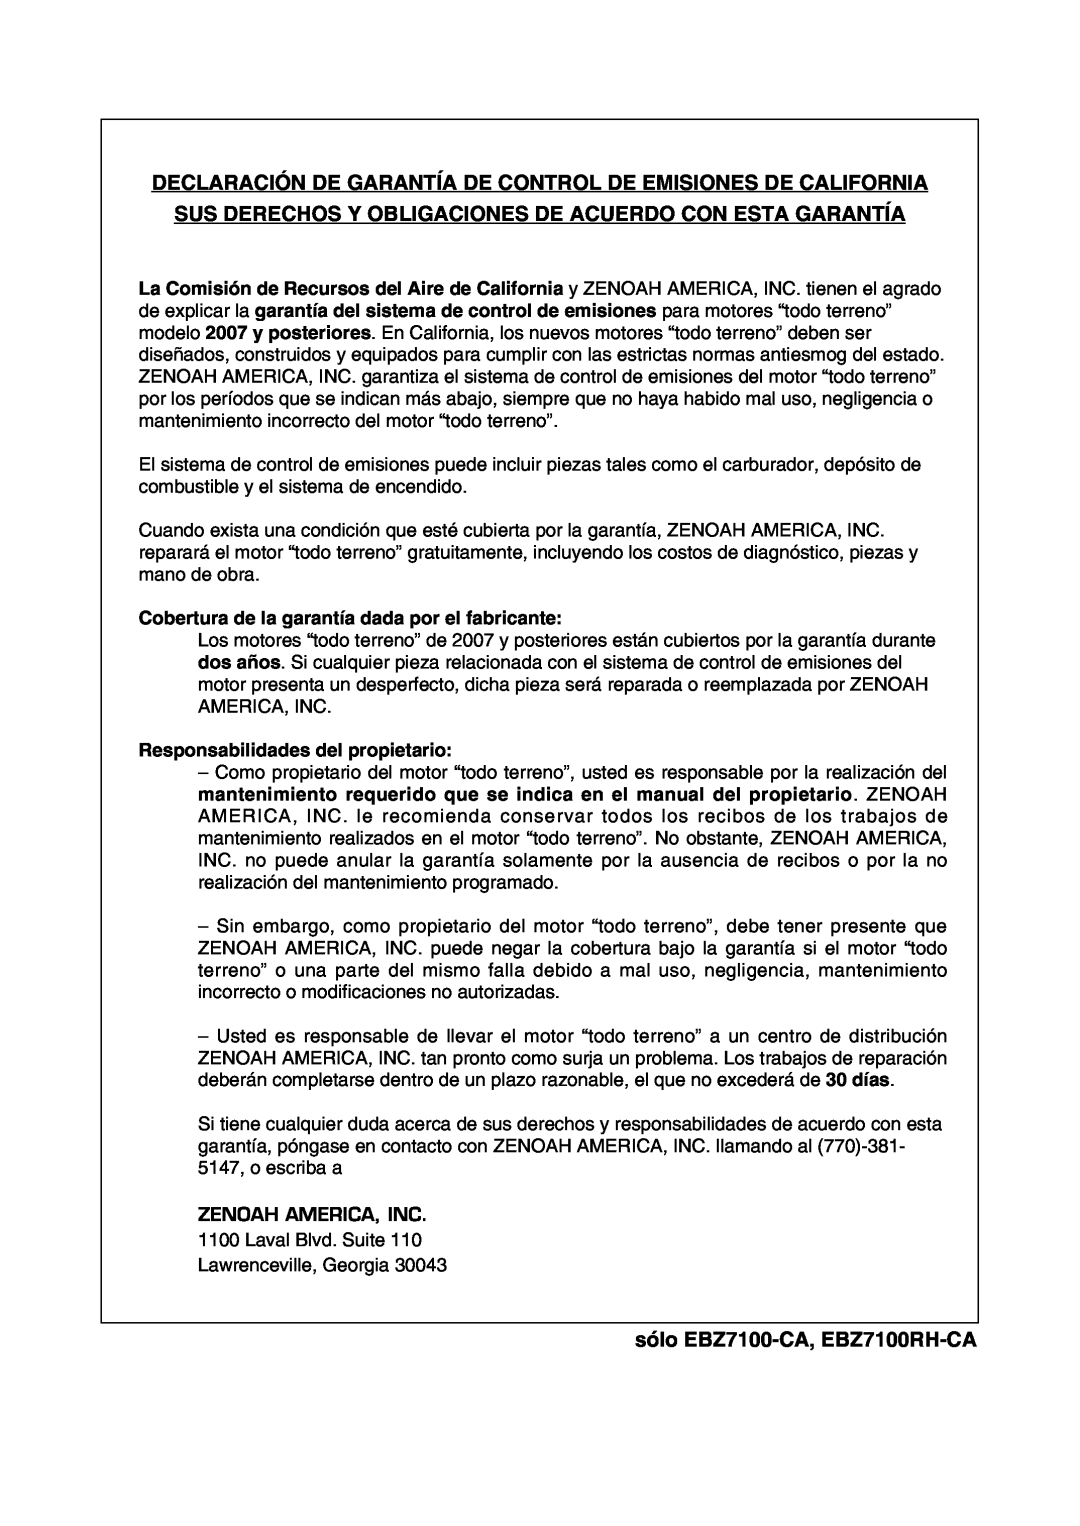 RedMax manual Declaración De Garantía De Control De Emisiones De California, sólo EBZ7100-CA, EBZ7100RH-CA 